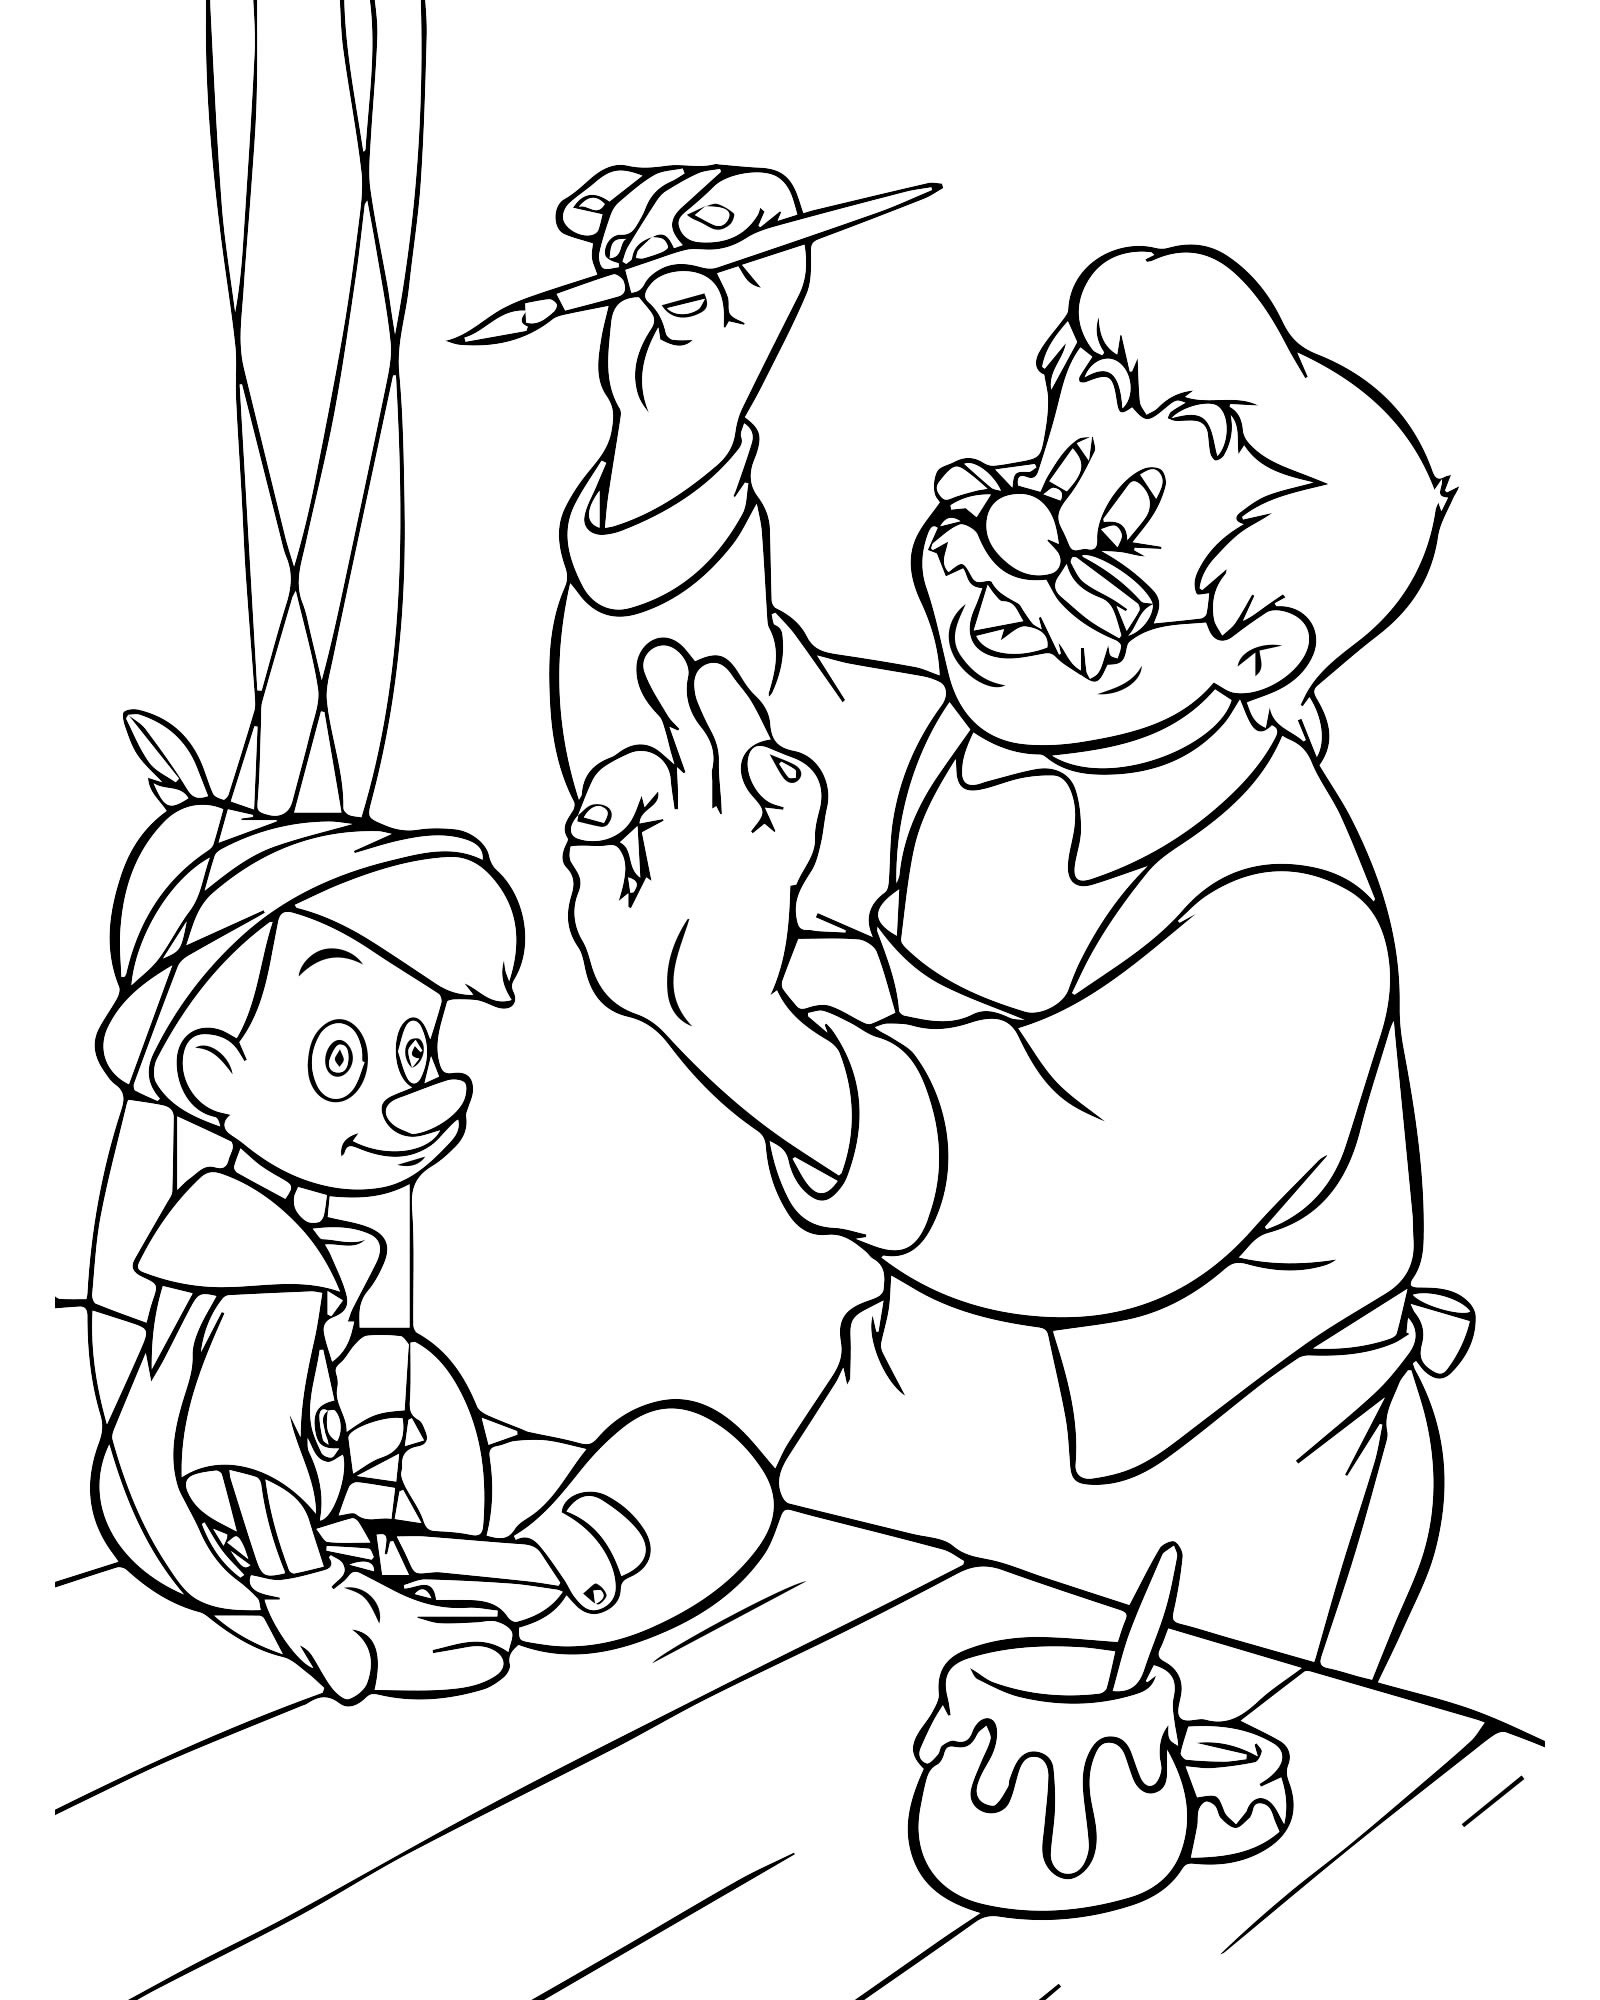 Мультфильм Пиноккио раскраска для детей